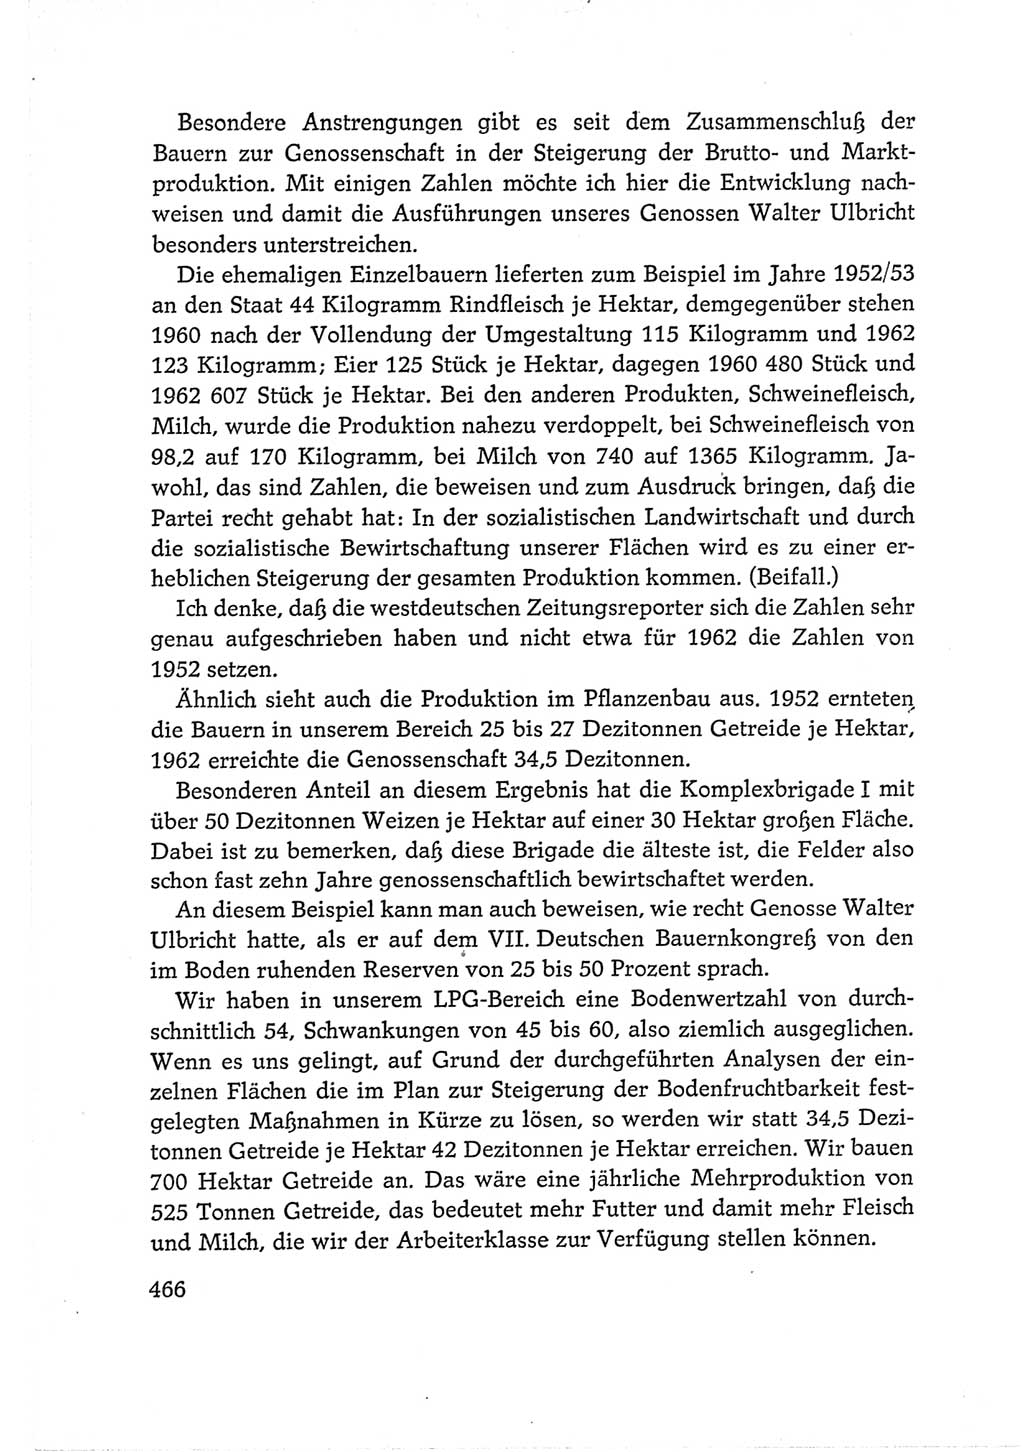 Protokoll der Verhandlungen des Ⅵ. Parteitages der Sozialistischen Einheitspartei Deutschlands (SED) [Deutsche Demokratische Republik (DDR)] 1963, Band Ⅰ, Seite 466 (Prot. Verh. Ⅵ. PT SED DDR 1963, Bd. Ⅰ, S. 466)